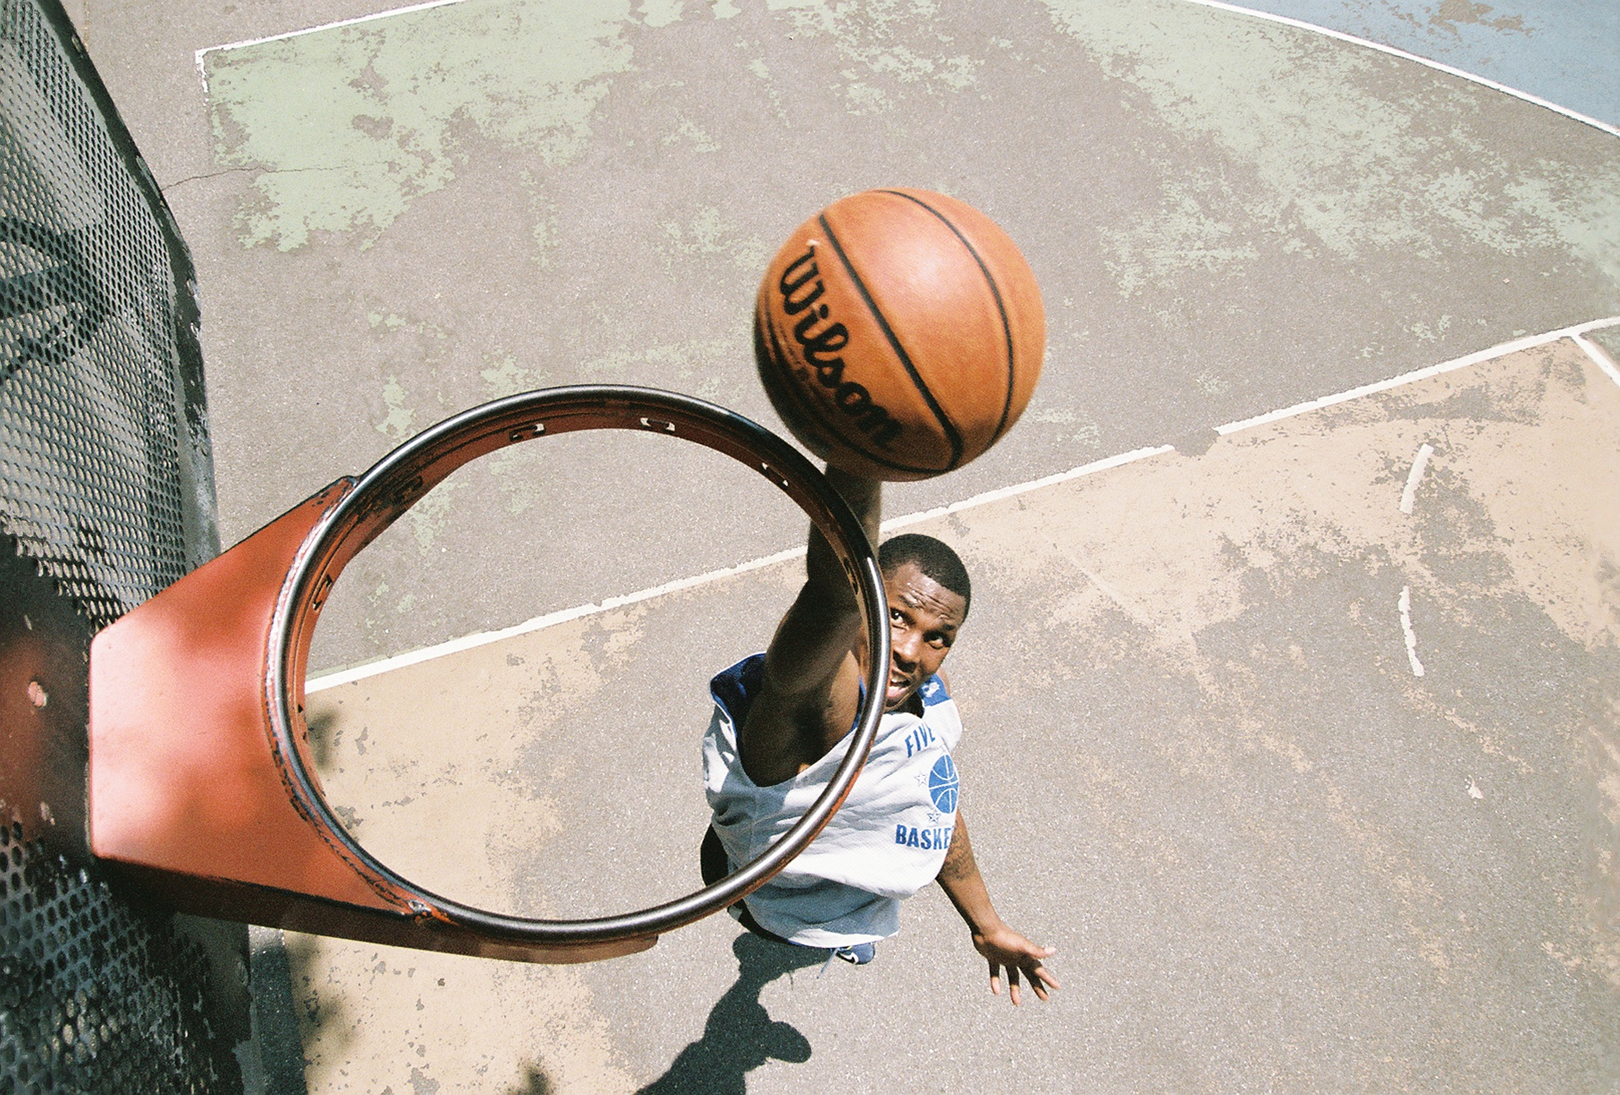 Vista desde arriba de un aro de baloncesto sin red, donde se ve a un jugador a punto de tirar una pelota de baloncesto a través del aro